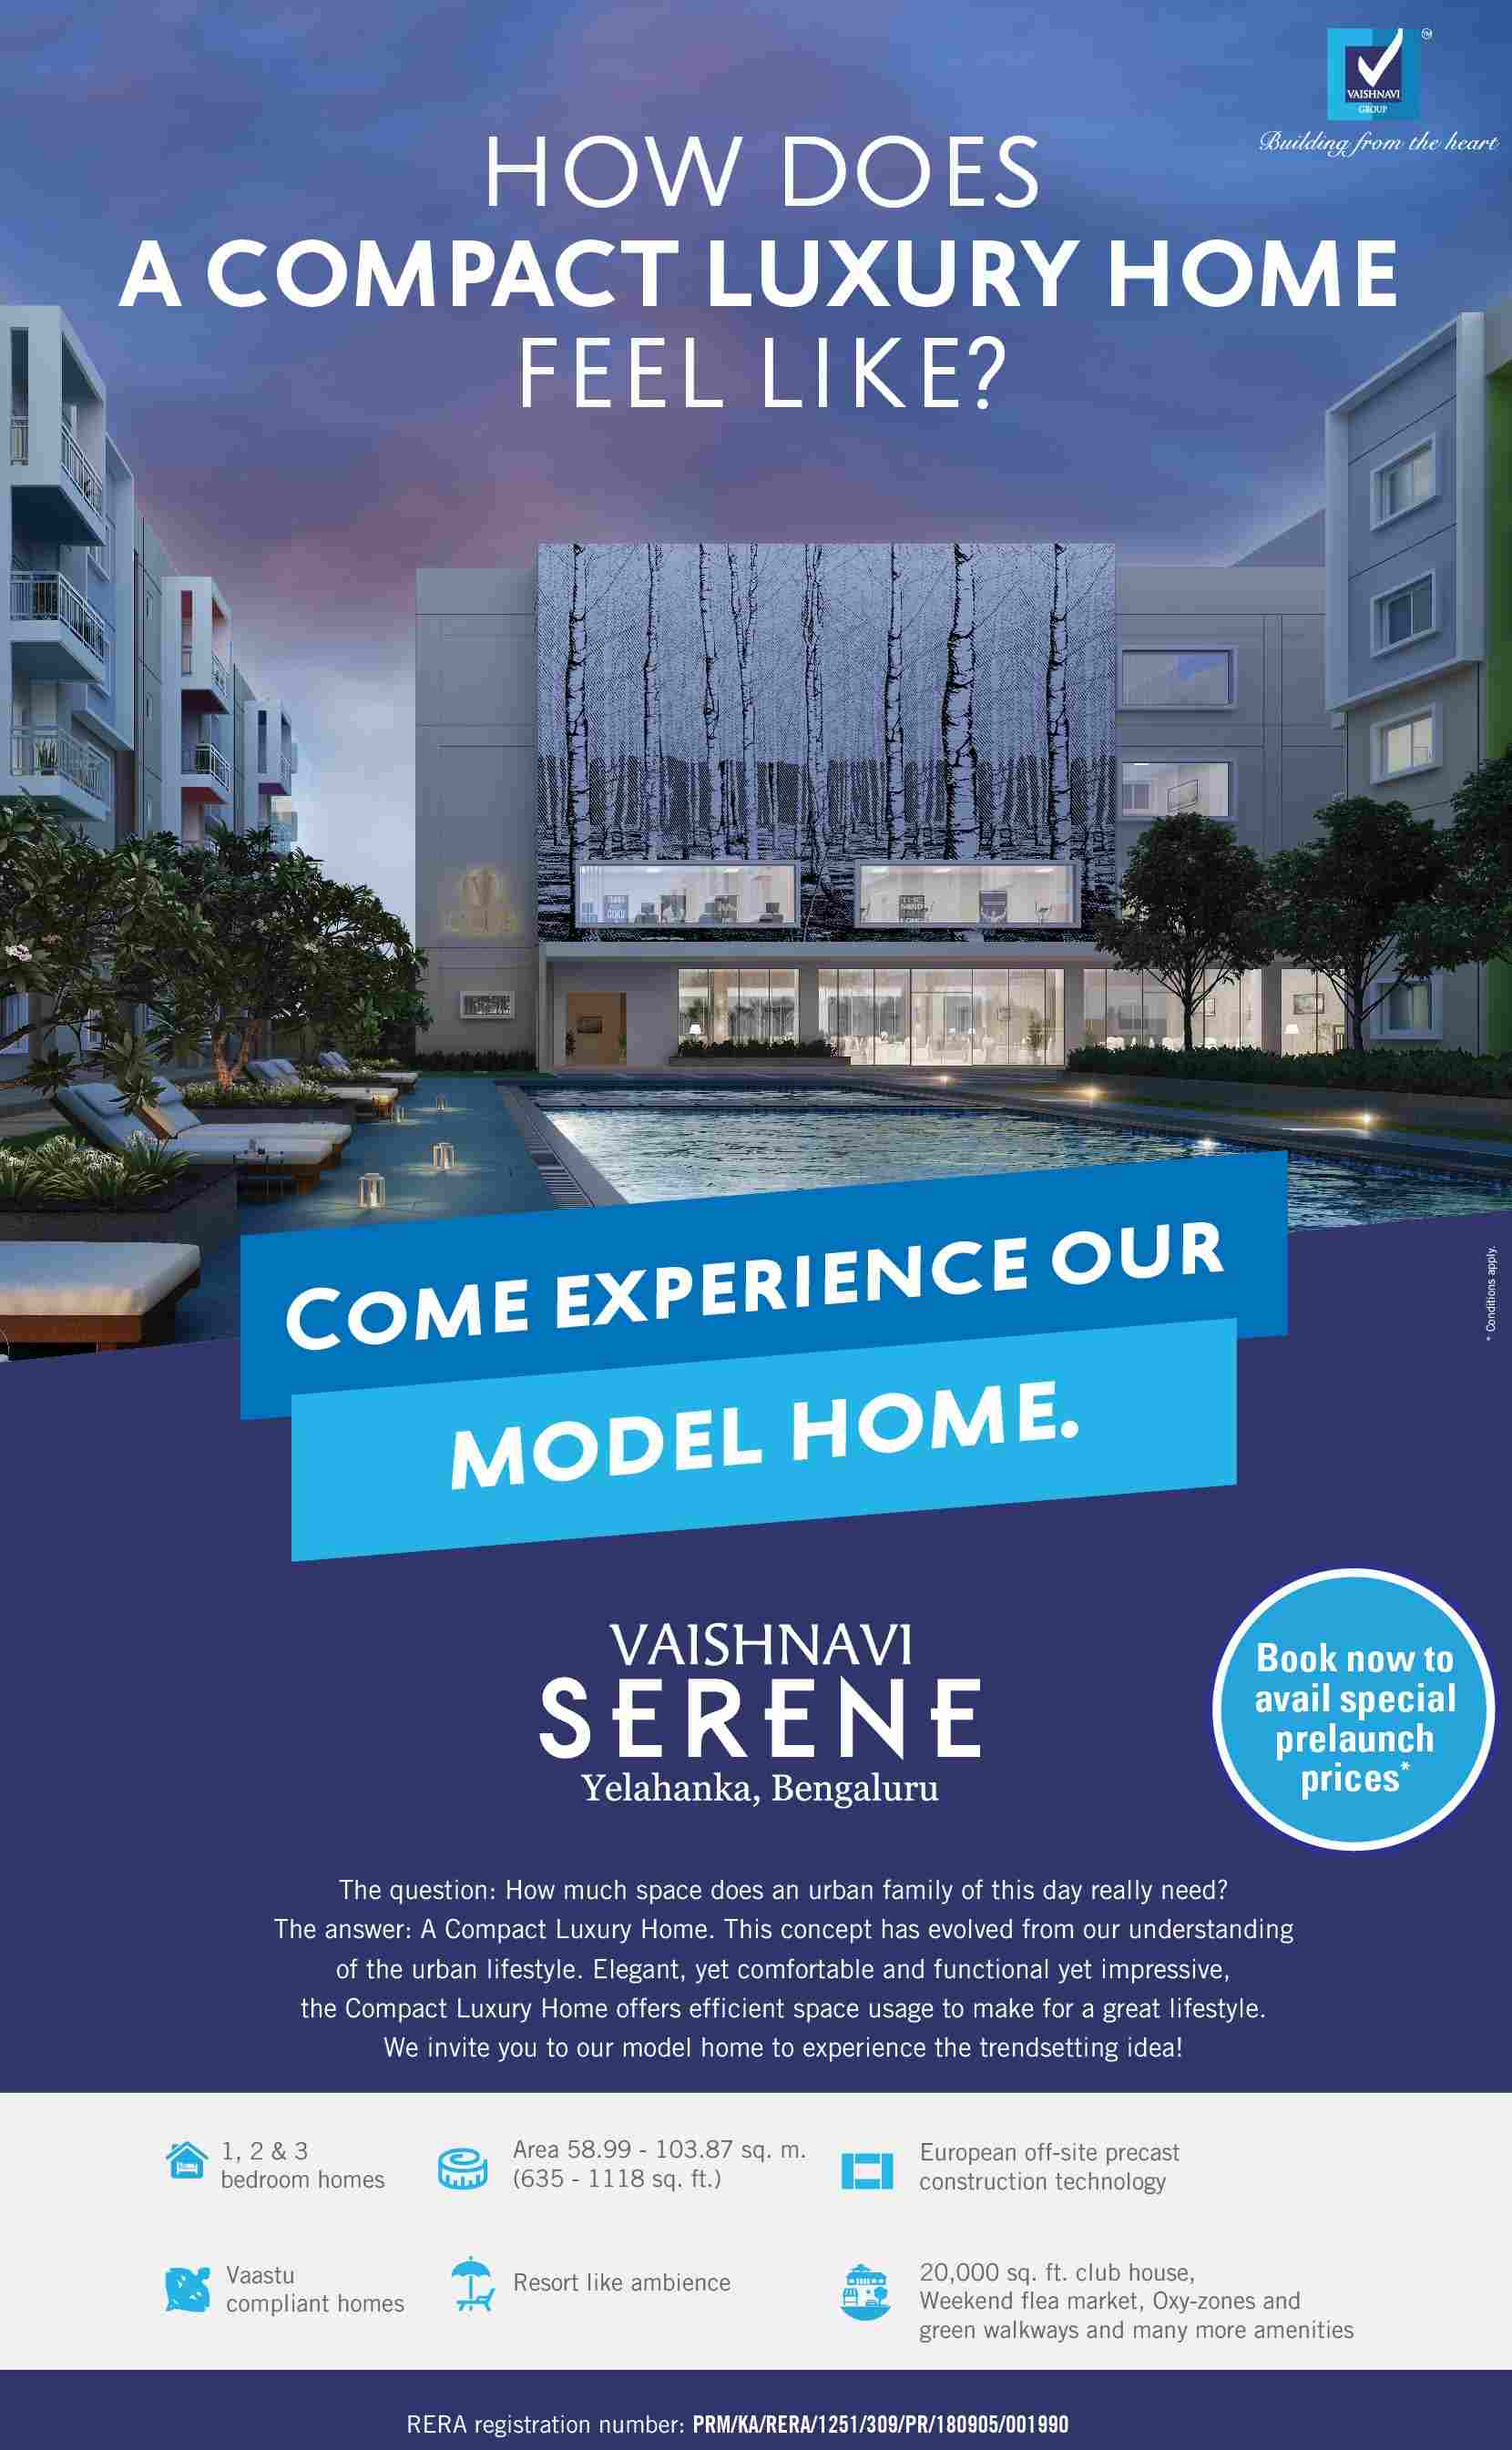 Come and experience model home at Vaishnavi Serene in Yelahanka, Bangalore Update